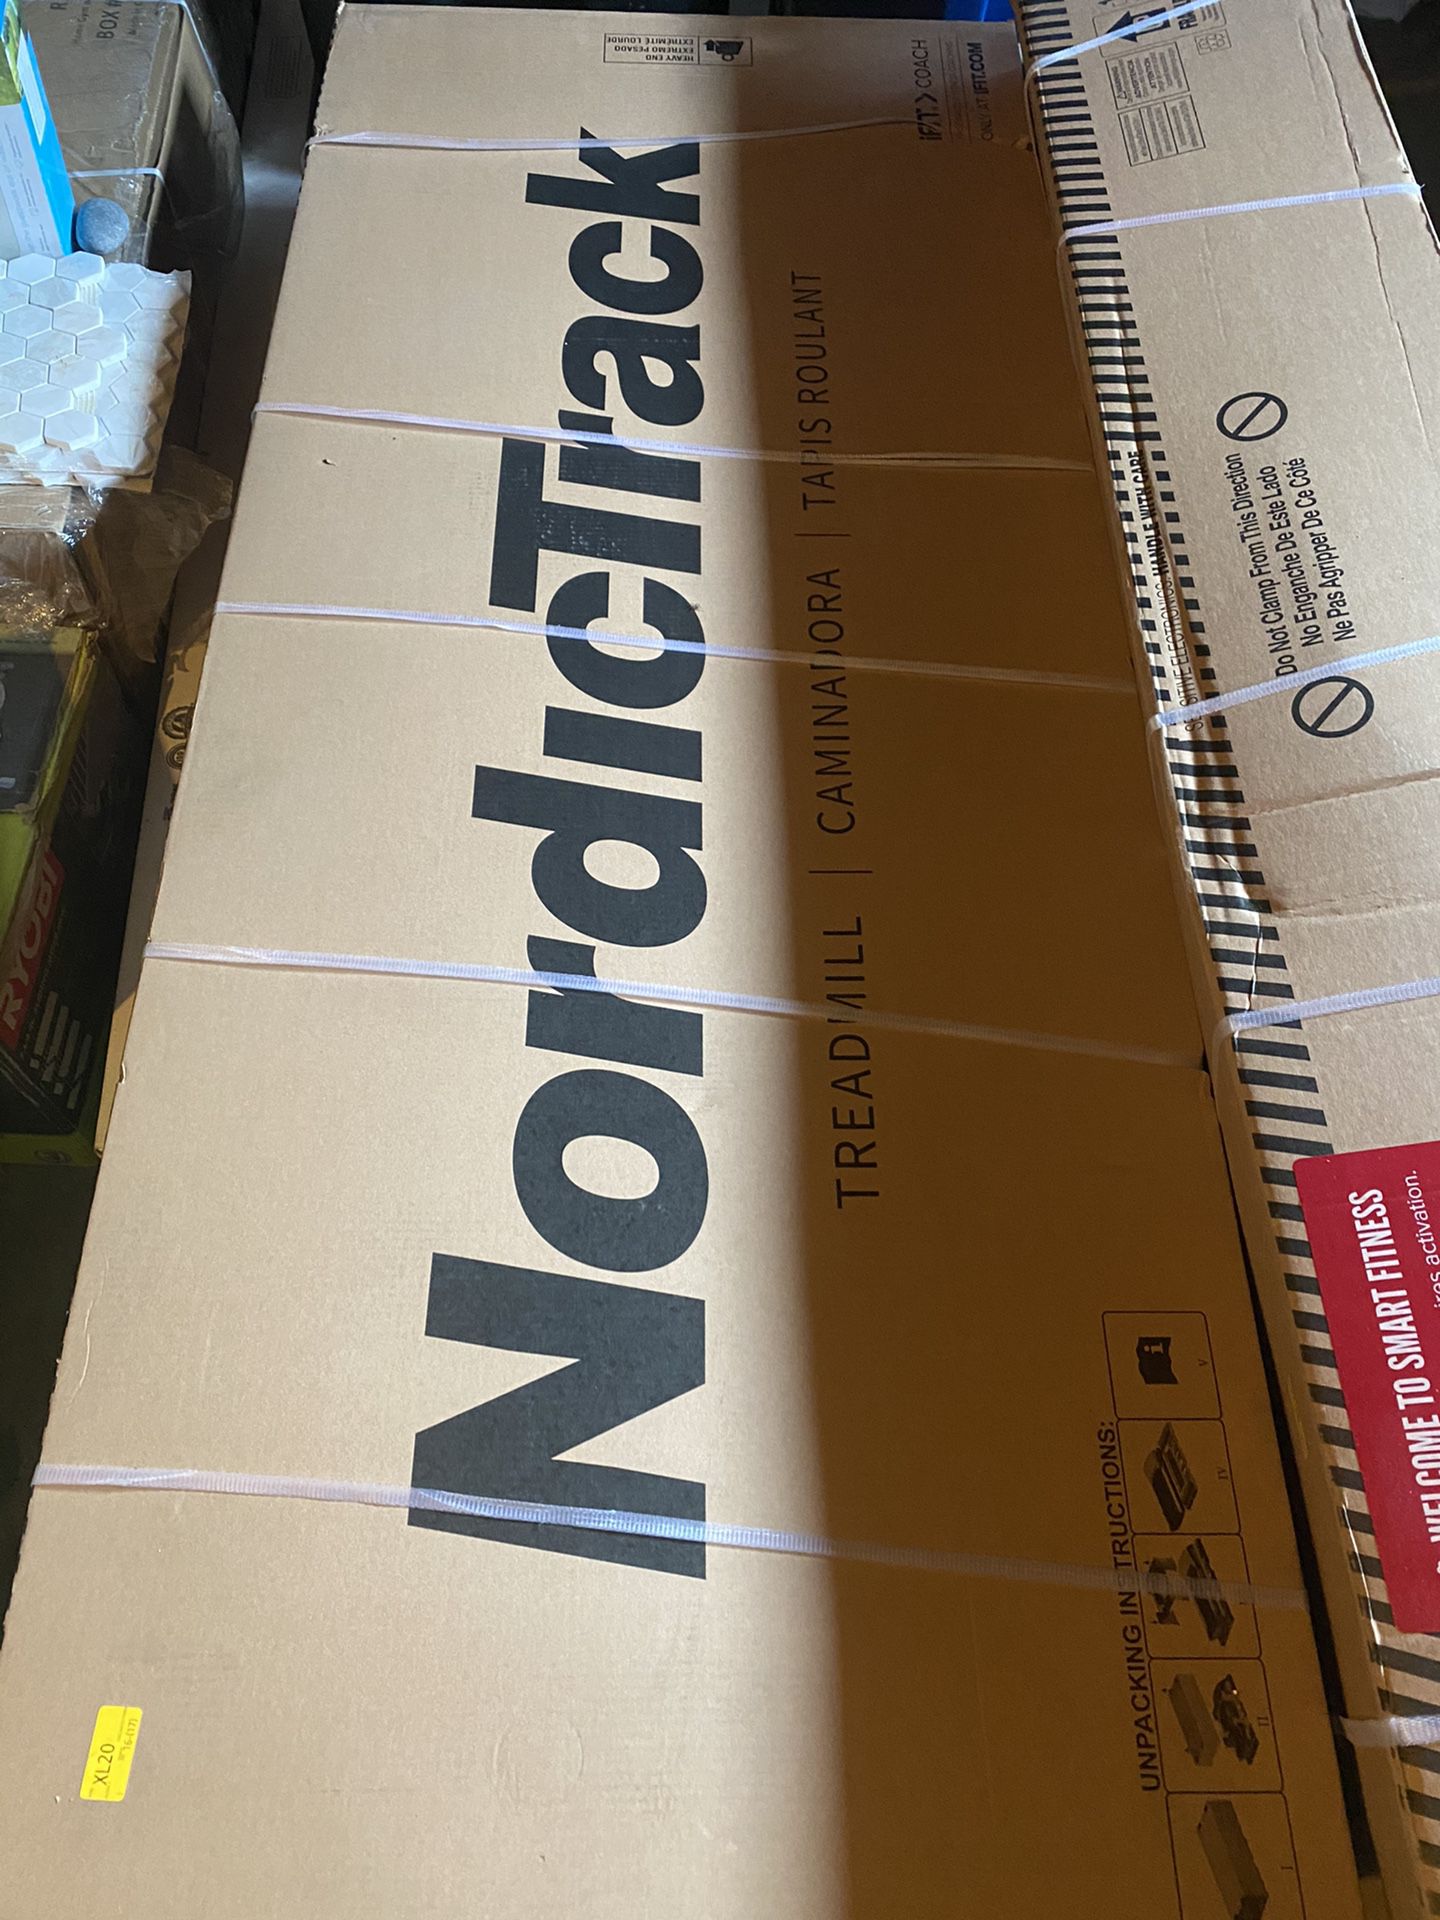 NordicTrack treadmill brand new in a box